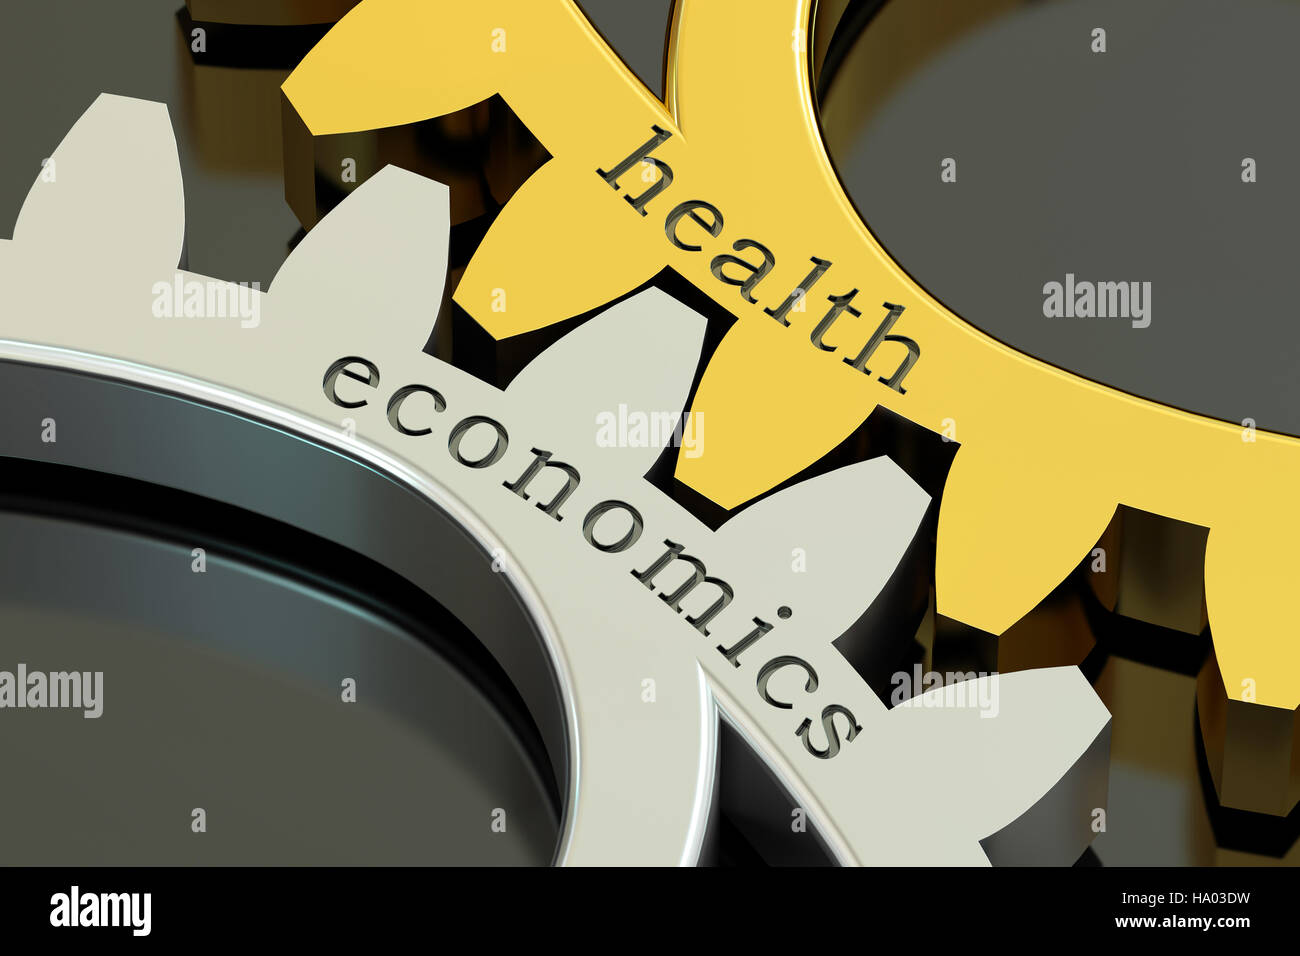 Economia sanitaria, concetto sulle ruote dentate, rendering 3D Foto Stock